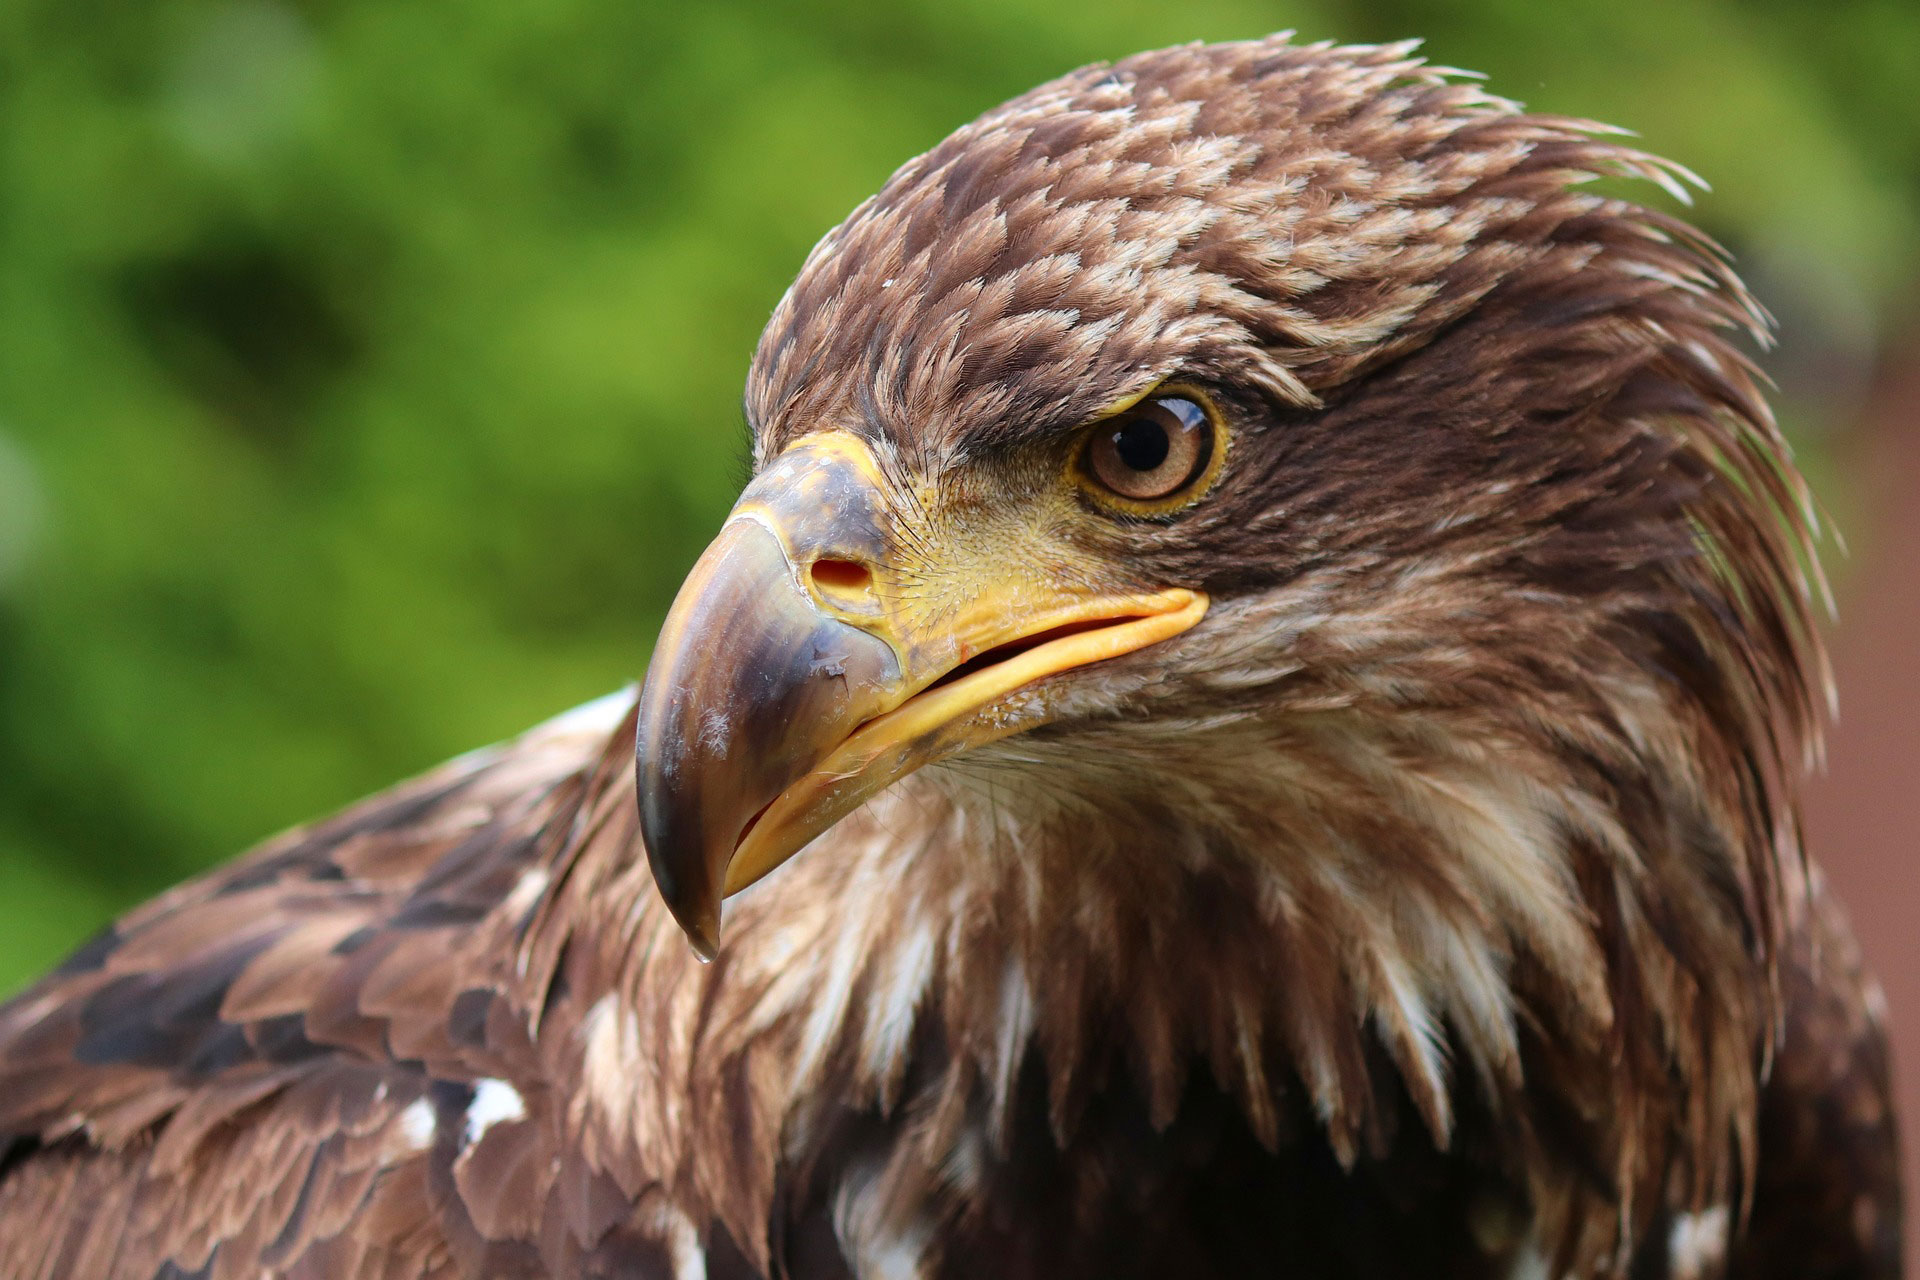 Seine Beute erkennt der Steinadler aus bis zu 1 km
Entfernung – wenn das keine Adleraugen sind © pixabay